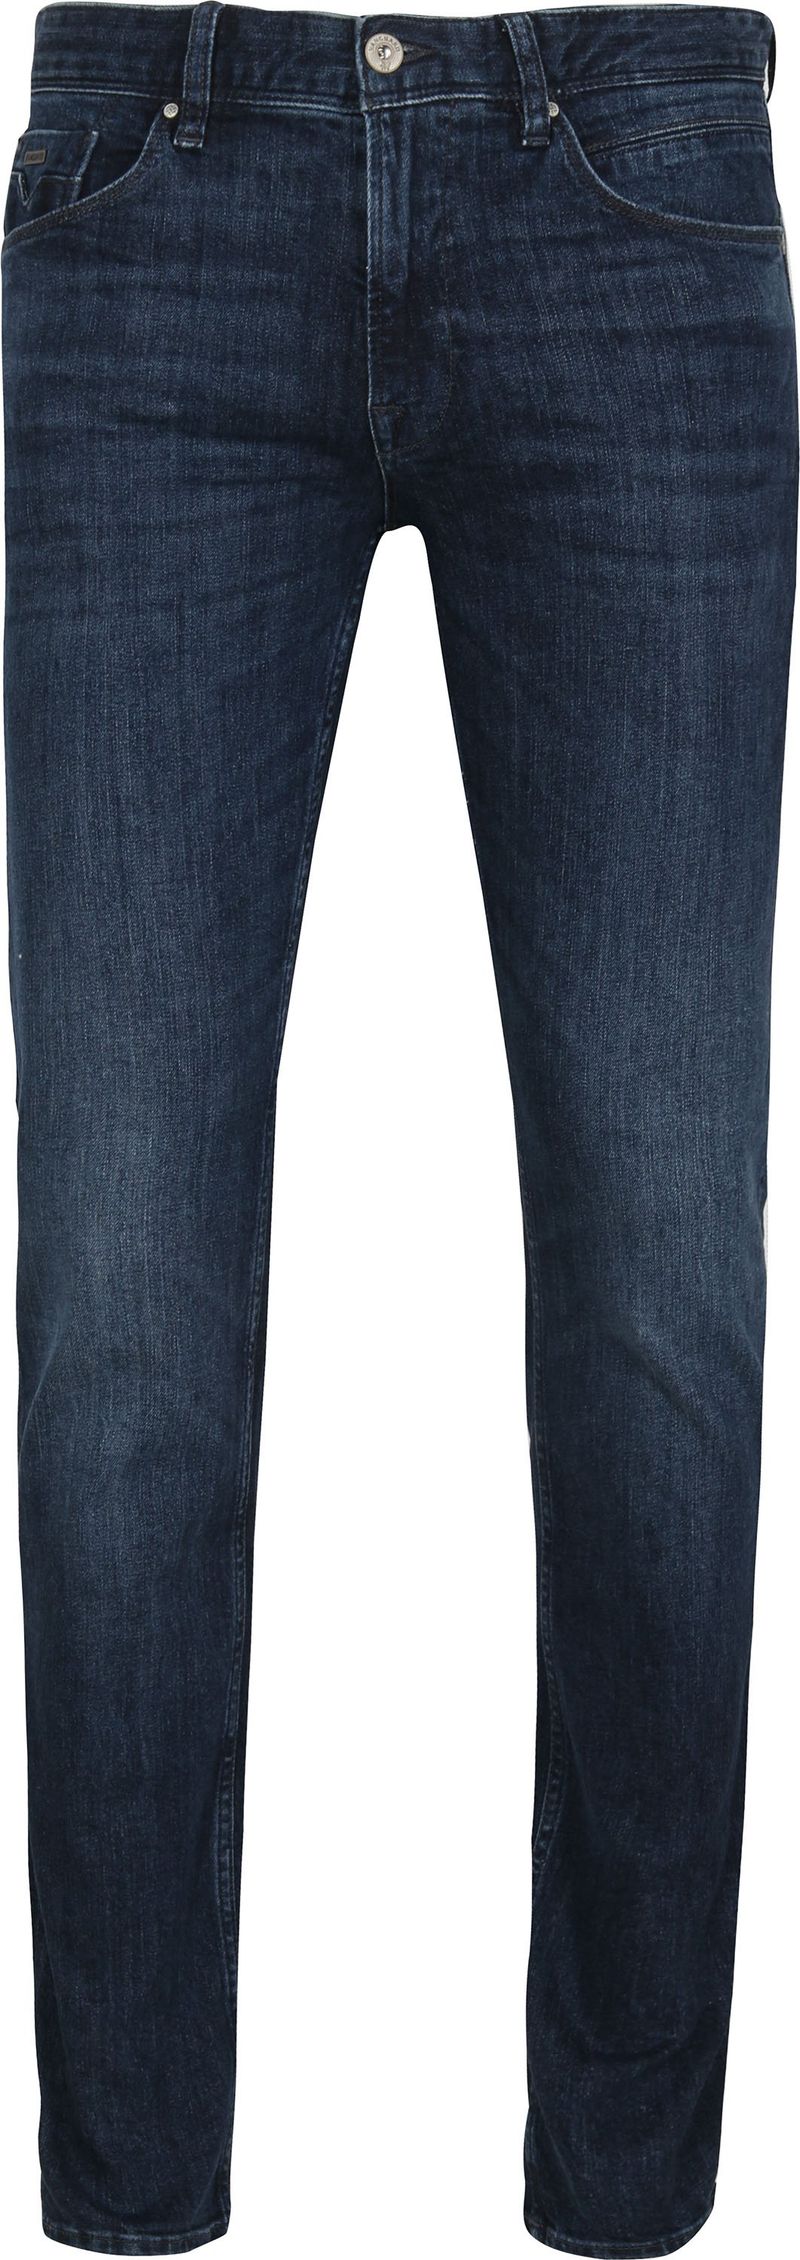 Vanguard Jeans V7 Rider Steel Washed Blau - Größe W 30 - L 32 günstig online kaufen